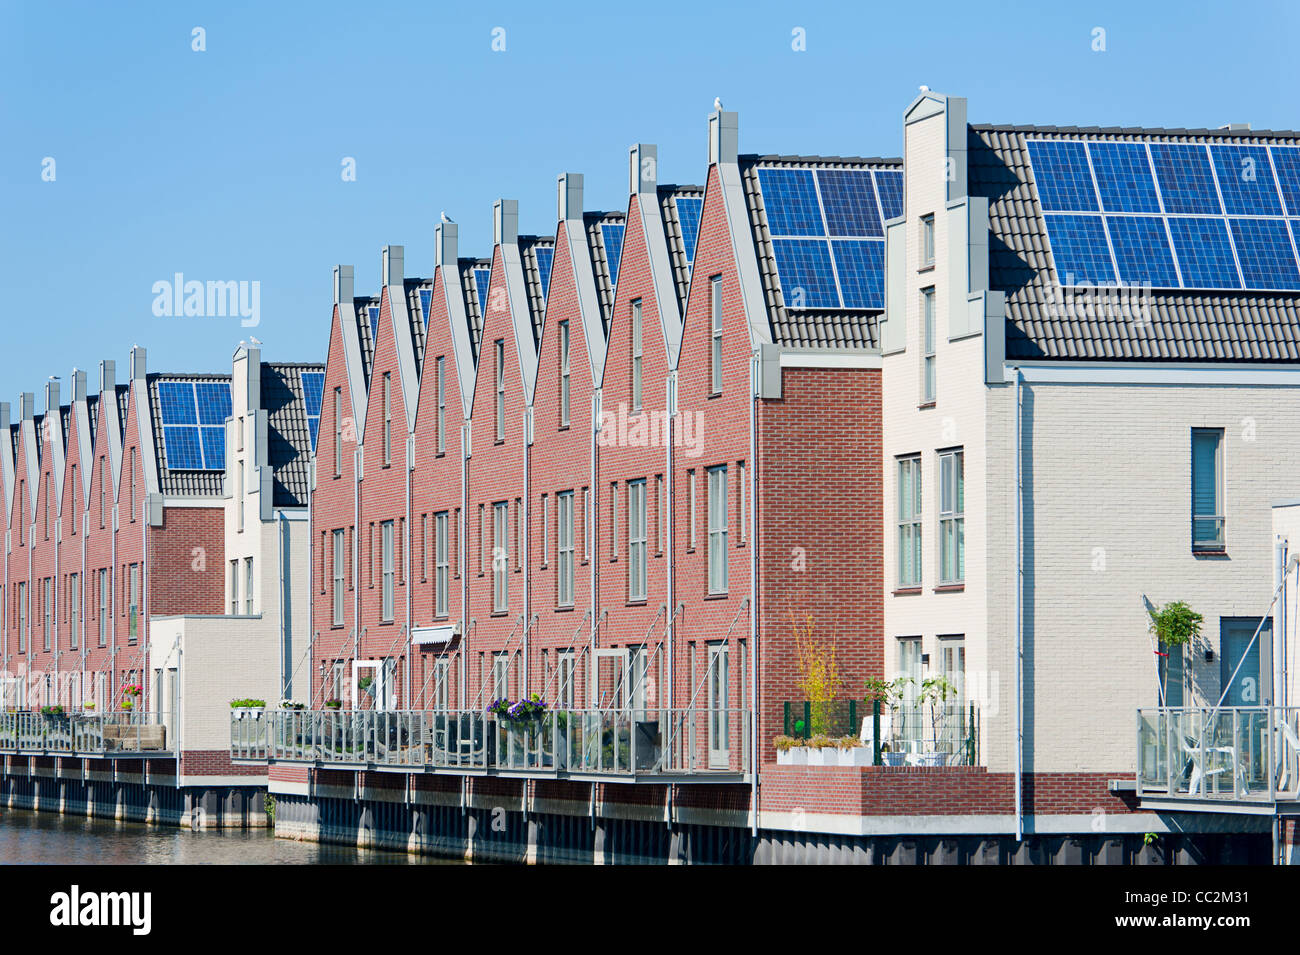 El holandés moderno casas con paneles solares en el techo Foto de stock